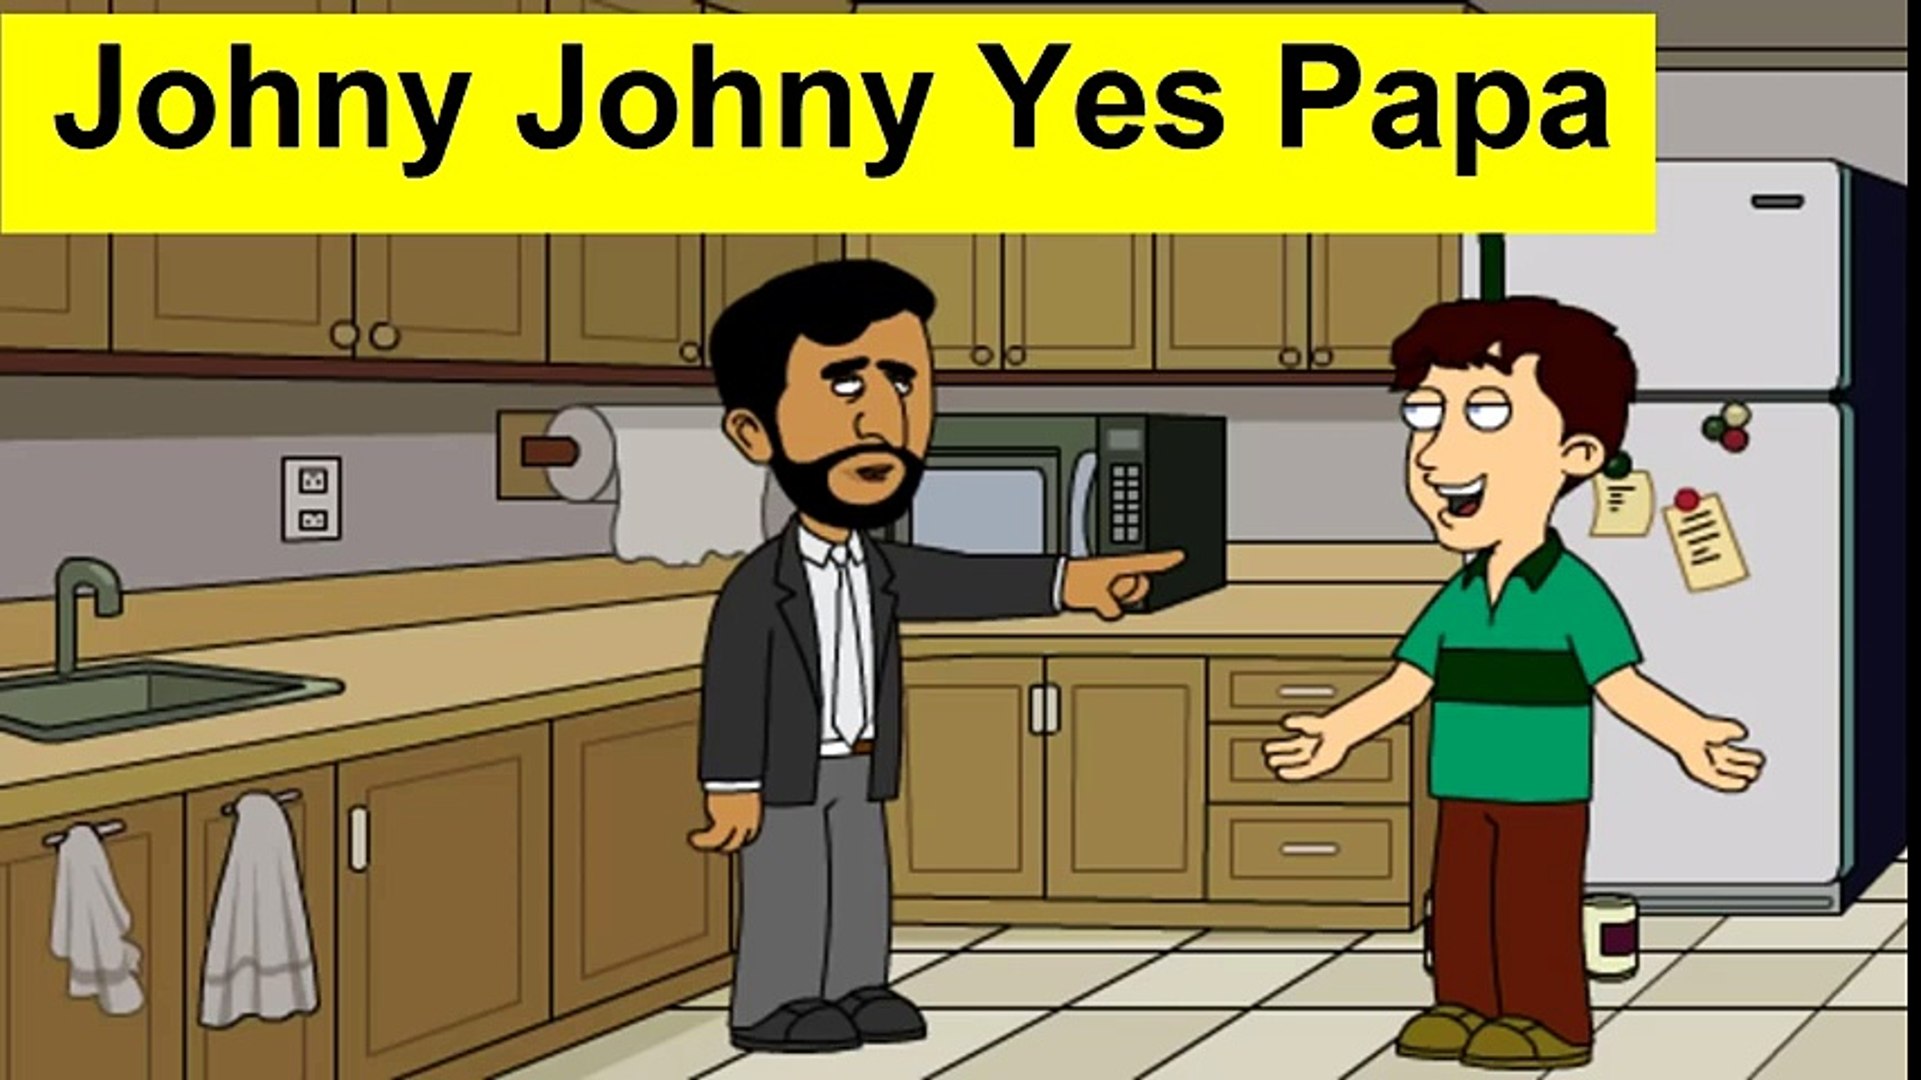 جوني جوني يس بابا رياض الاطفال Johny Johny Yes Papa فيديو Dailymotion